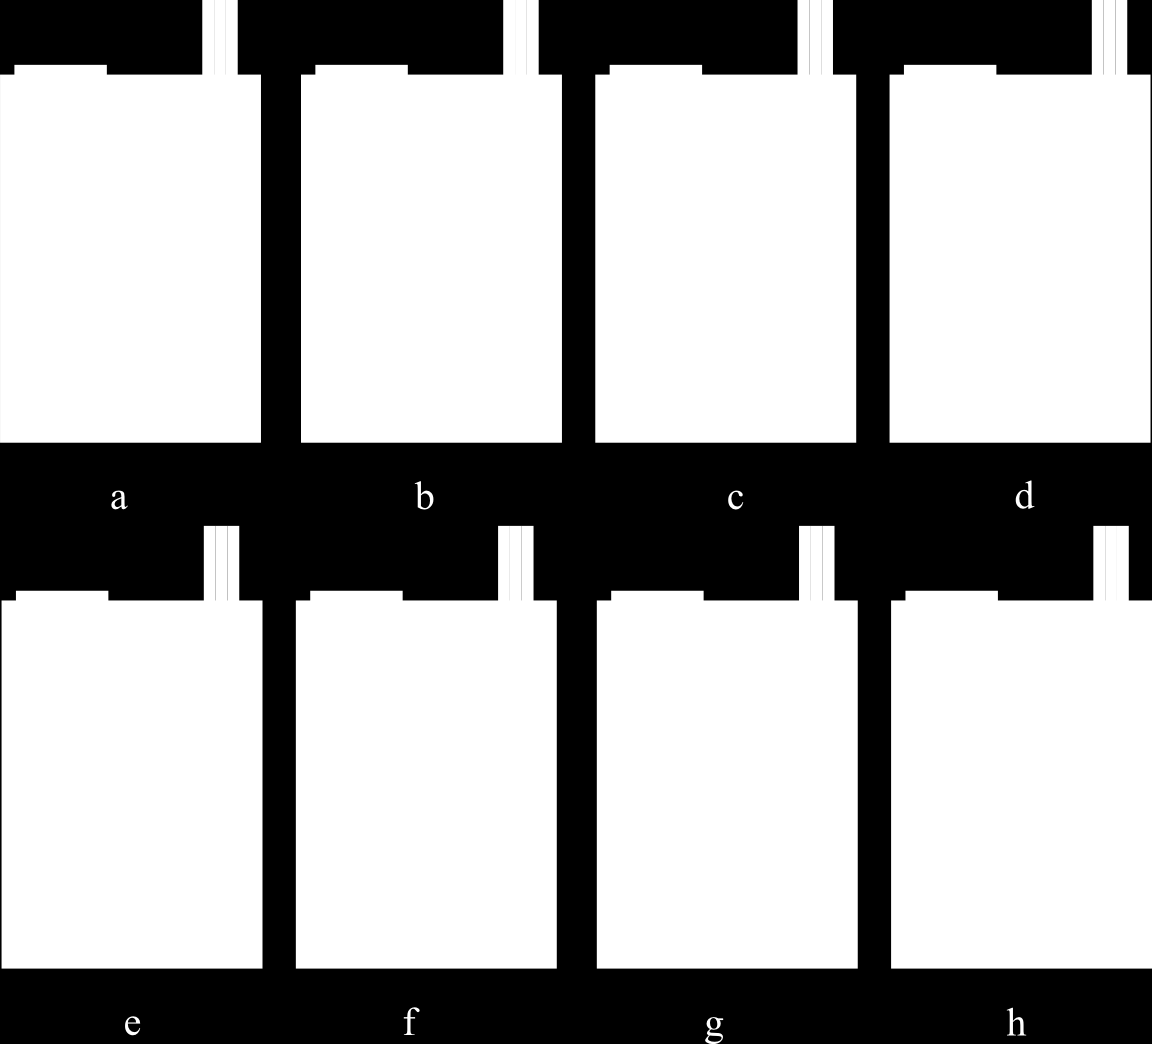 Obrazovka s QR kódom Tu sa F5J výška zobrazí vo forme QR kódu pre automatizovaný zber výsledkov dát pre vyhodnotenie súťaže. Na zber dát slúžia mobilné aplikácie tretích strán.